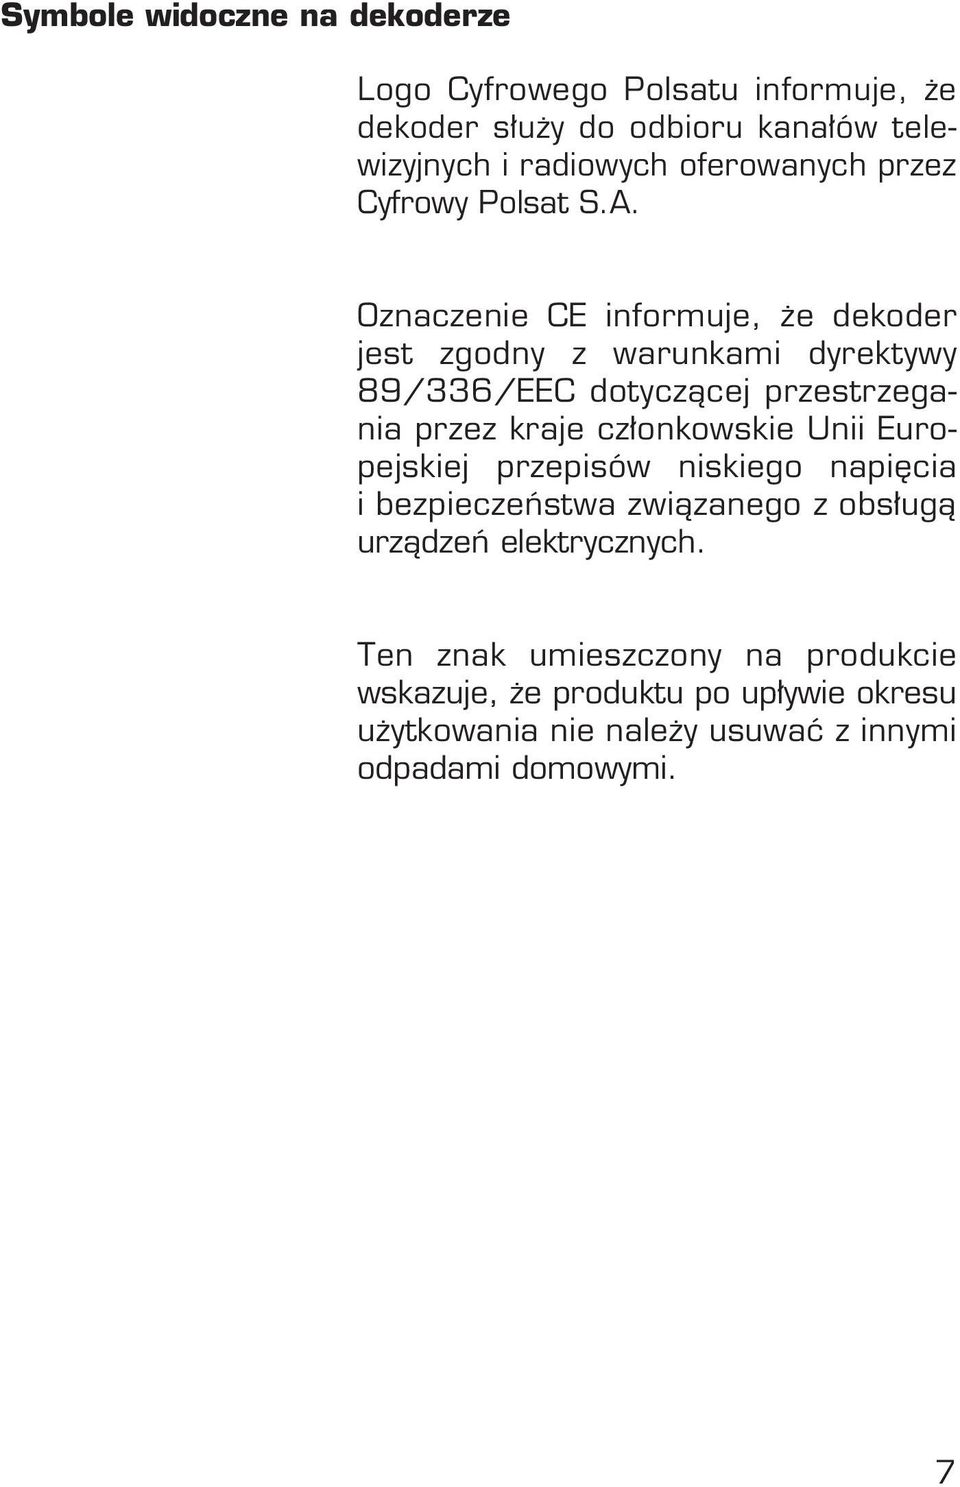 Oznaczenie CE informuje, e dekoder jest zgodny z warunkami dyrektywy 89/336/EEC dotyczàcej przestrzegania przez kraje cz onkowskie